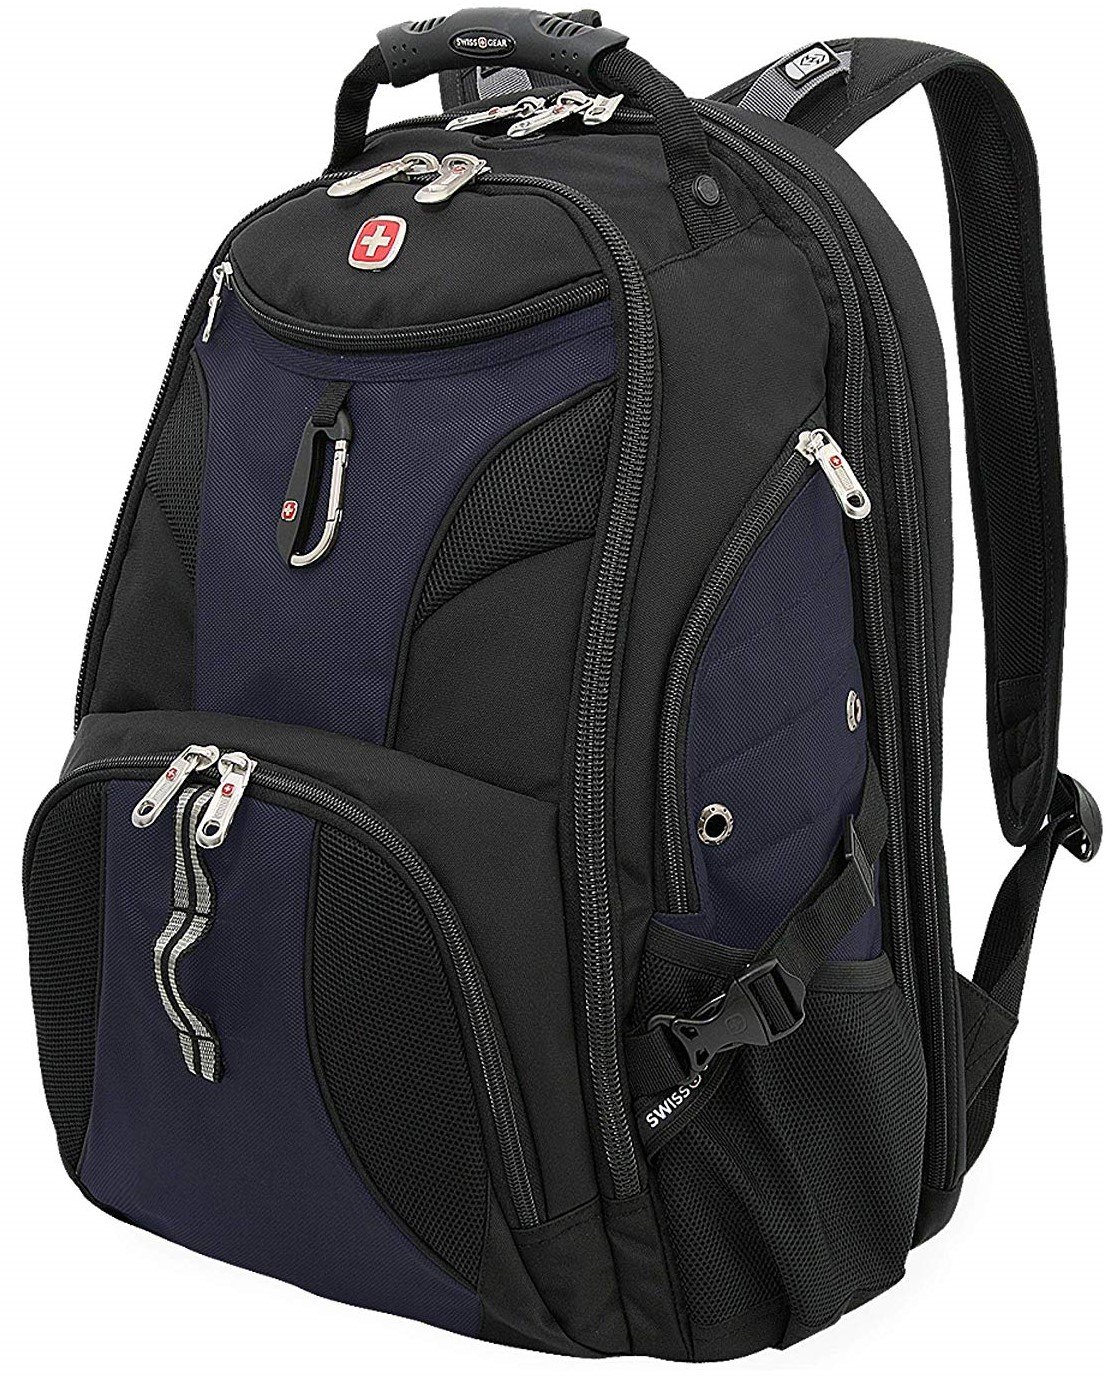 The SwissGear Laptop Backpack.